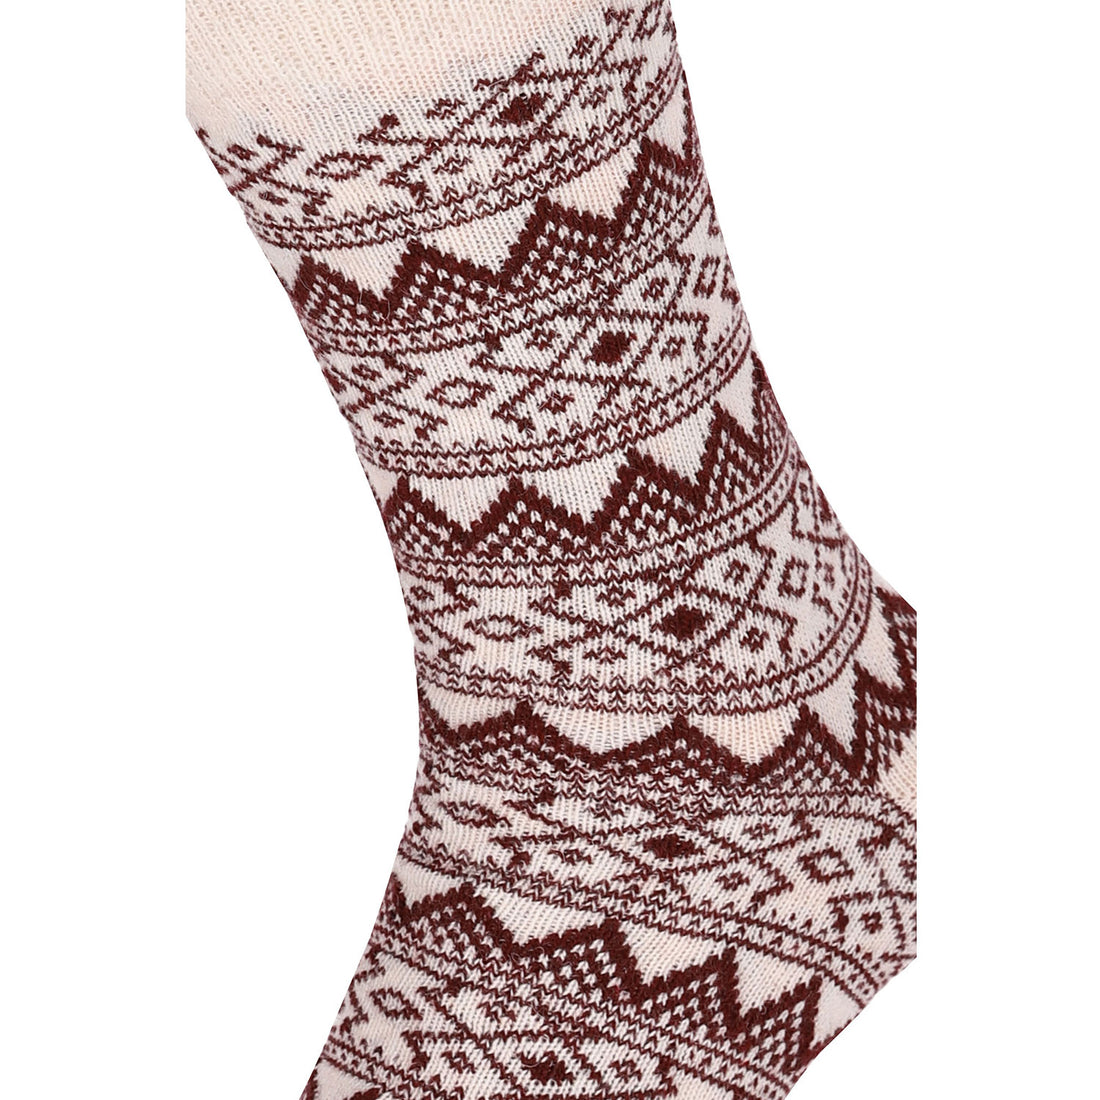 ChiliLifestyle Socken Wool Classic Schaf Wolle Damen Herren Warm 4 Paar